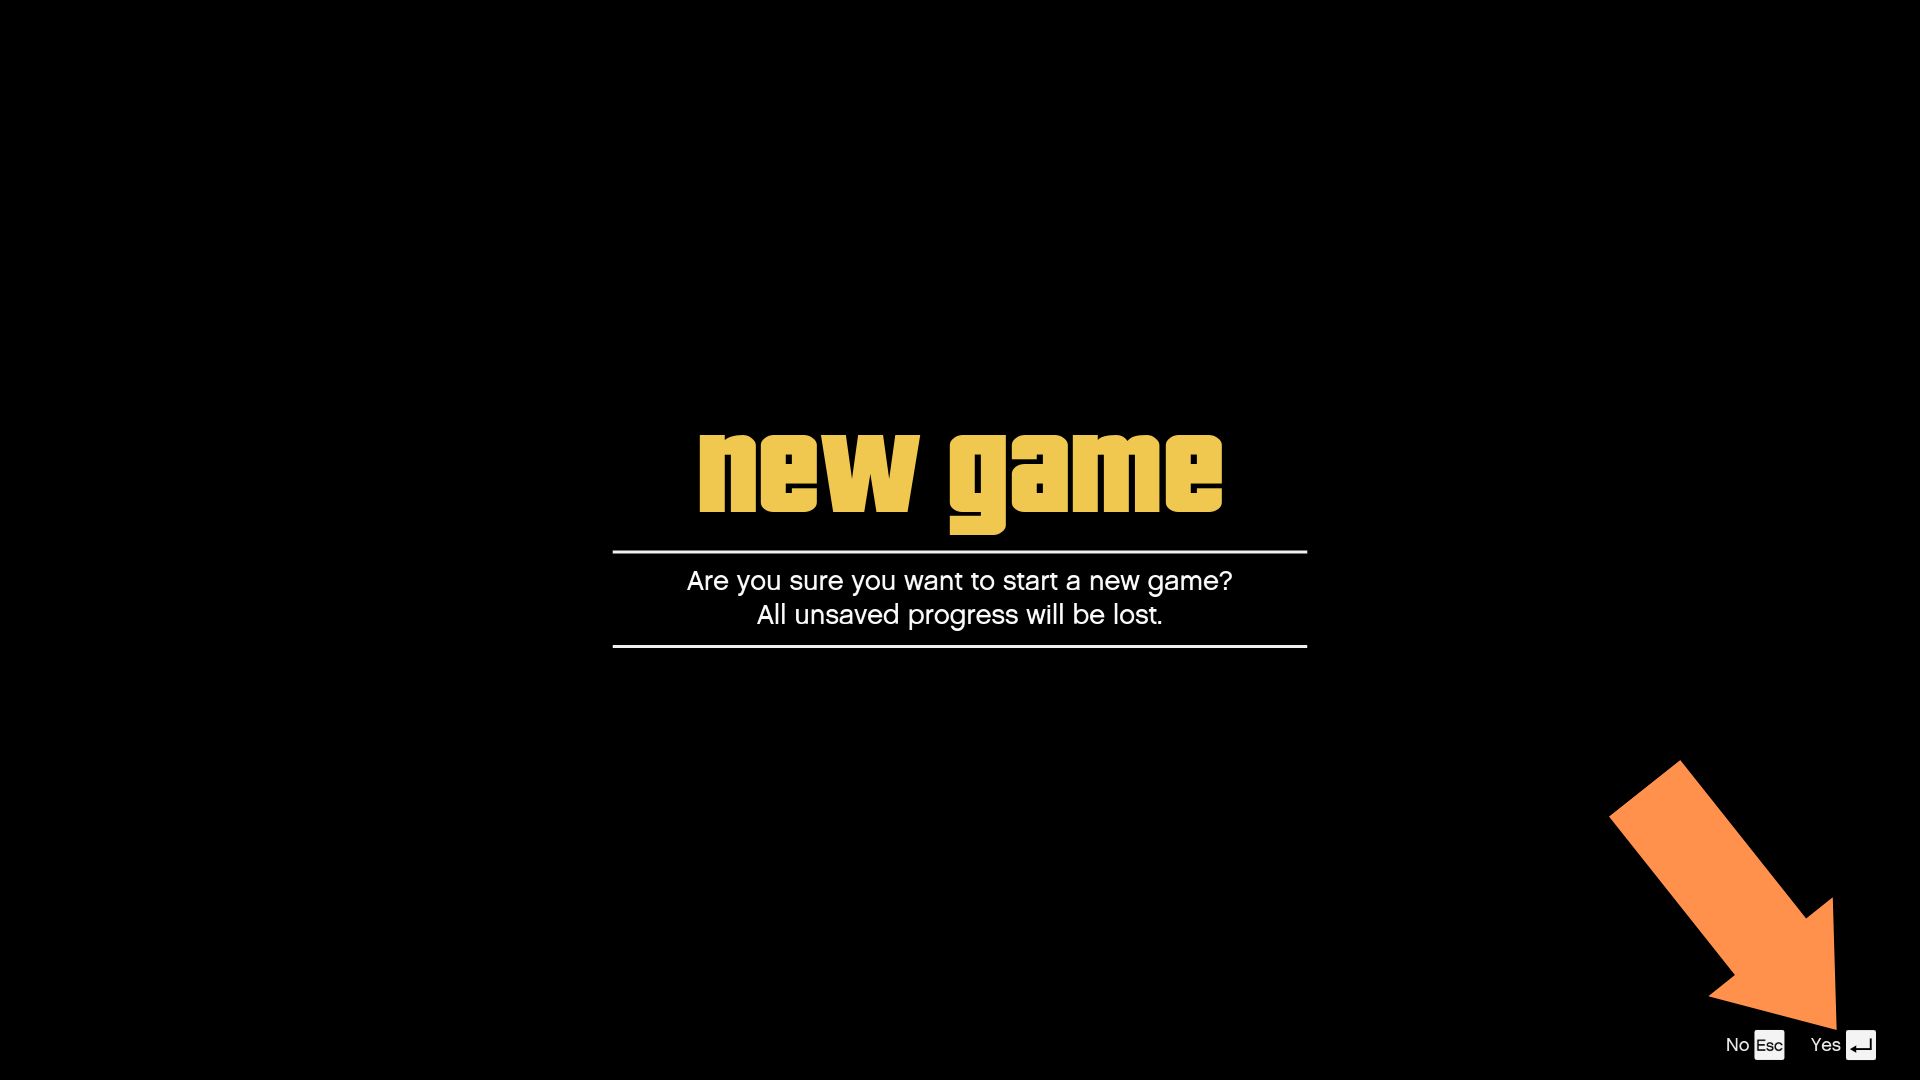 A gameplay still from GTA 5